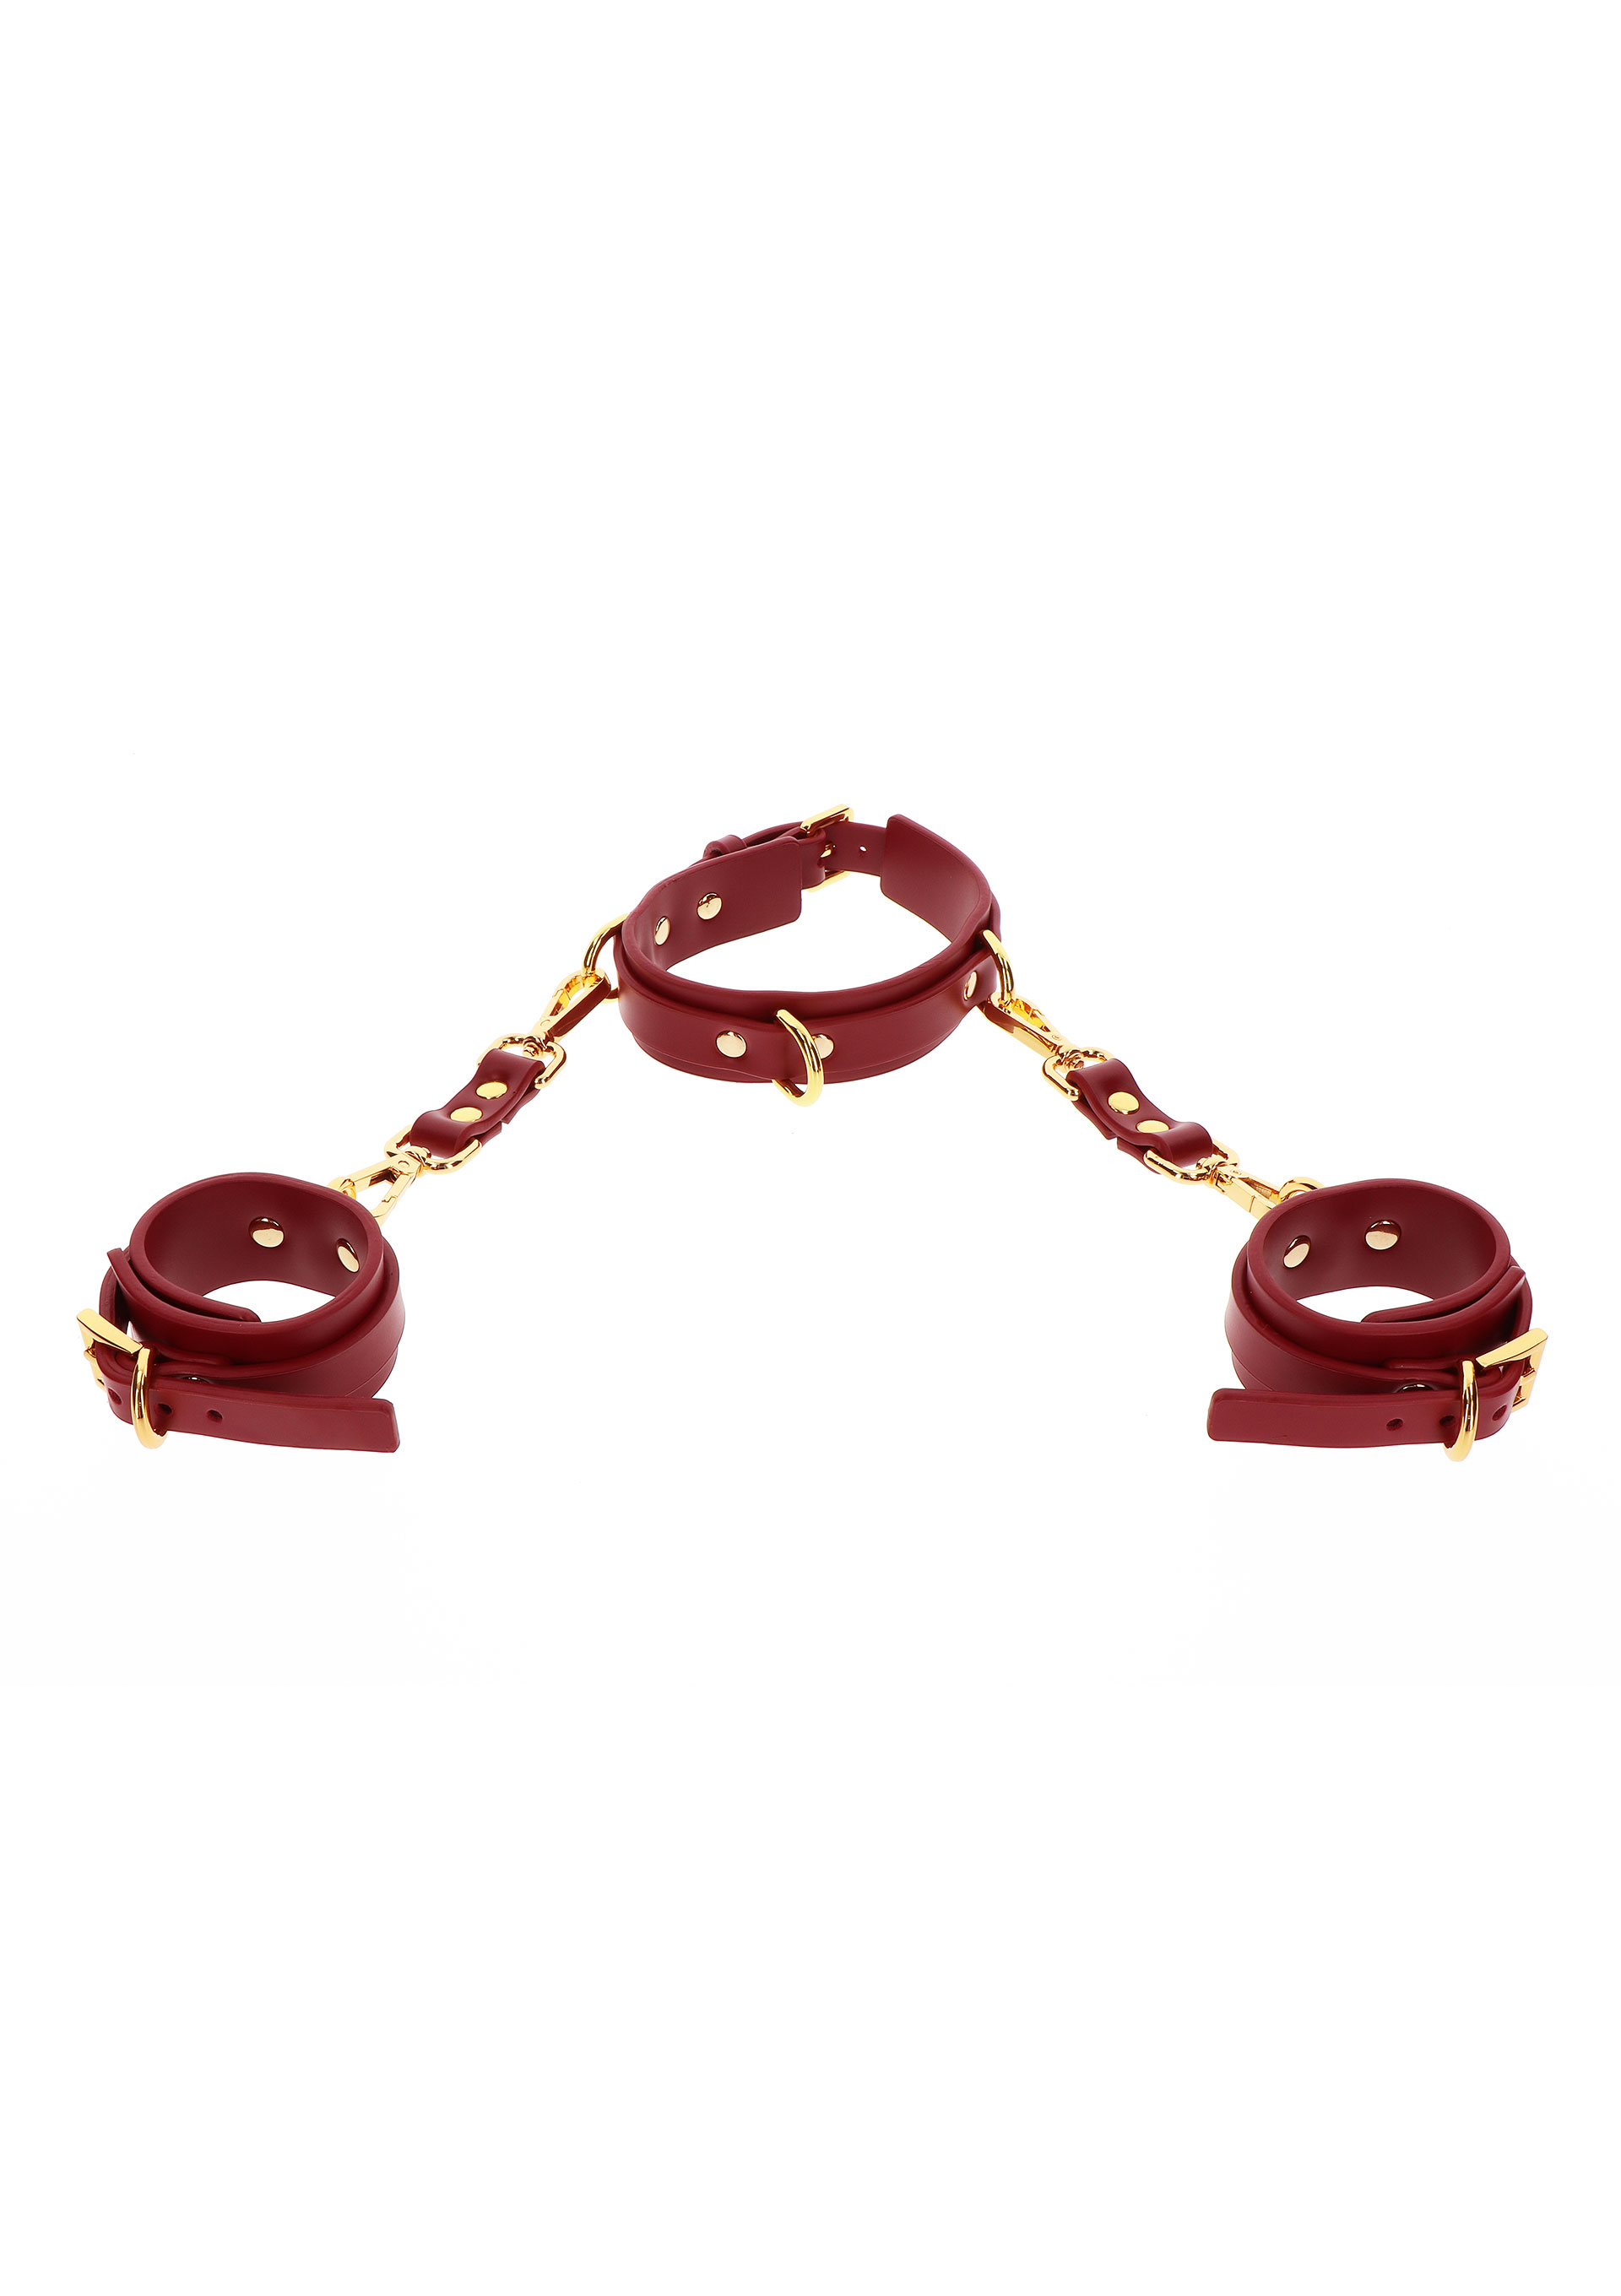 Taboom - Taboom D-Ring Collar and Wrist Cuffs